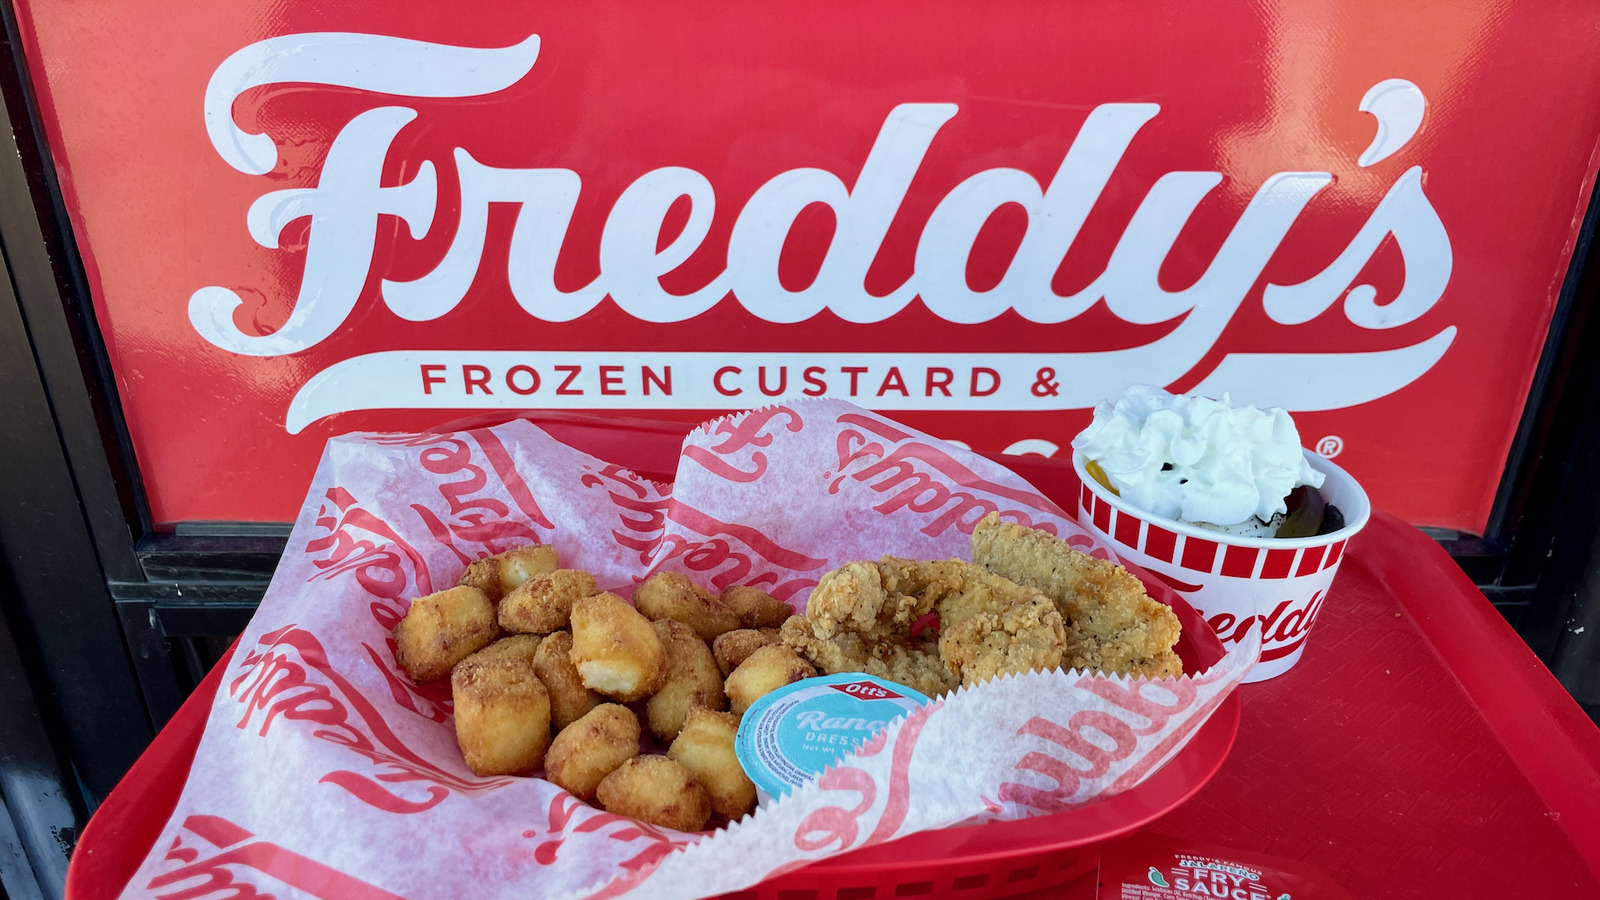  Freddy's Frozen Custard & Steakburgers, Freddy's Famous Steakburger  & Fry Seasoning